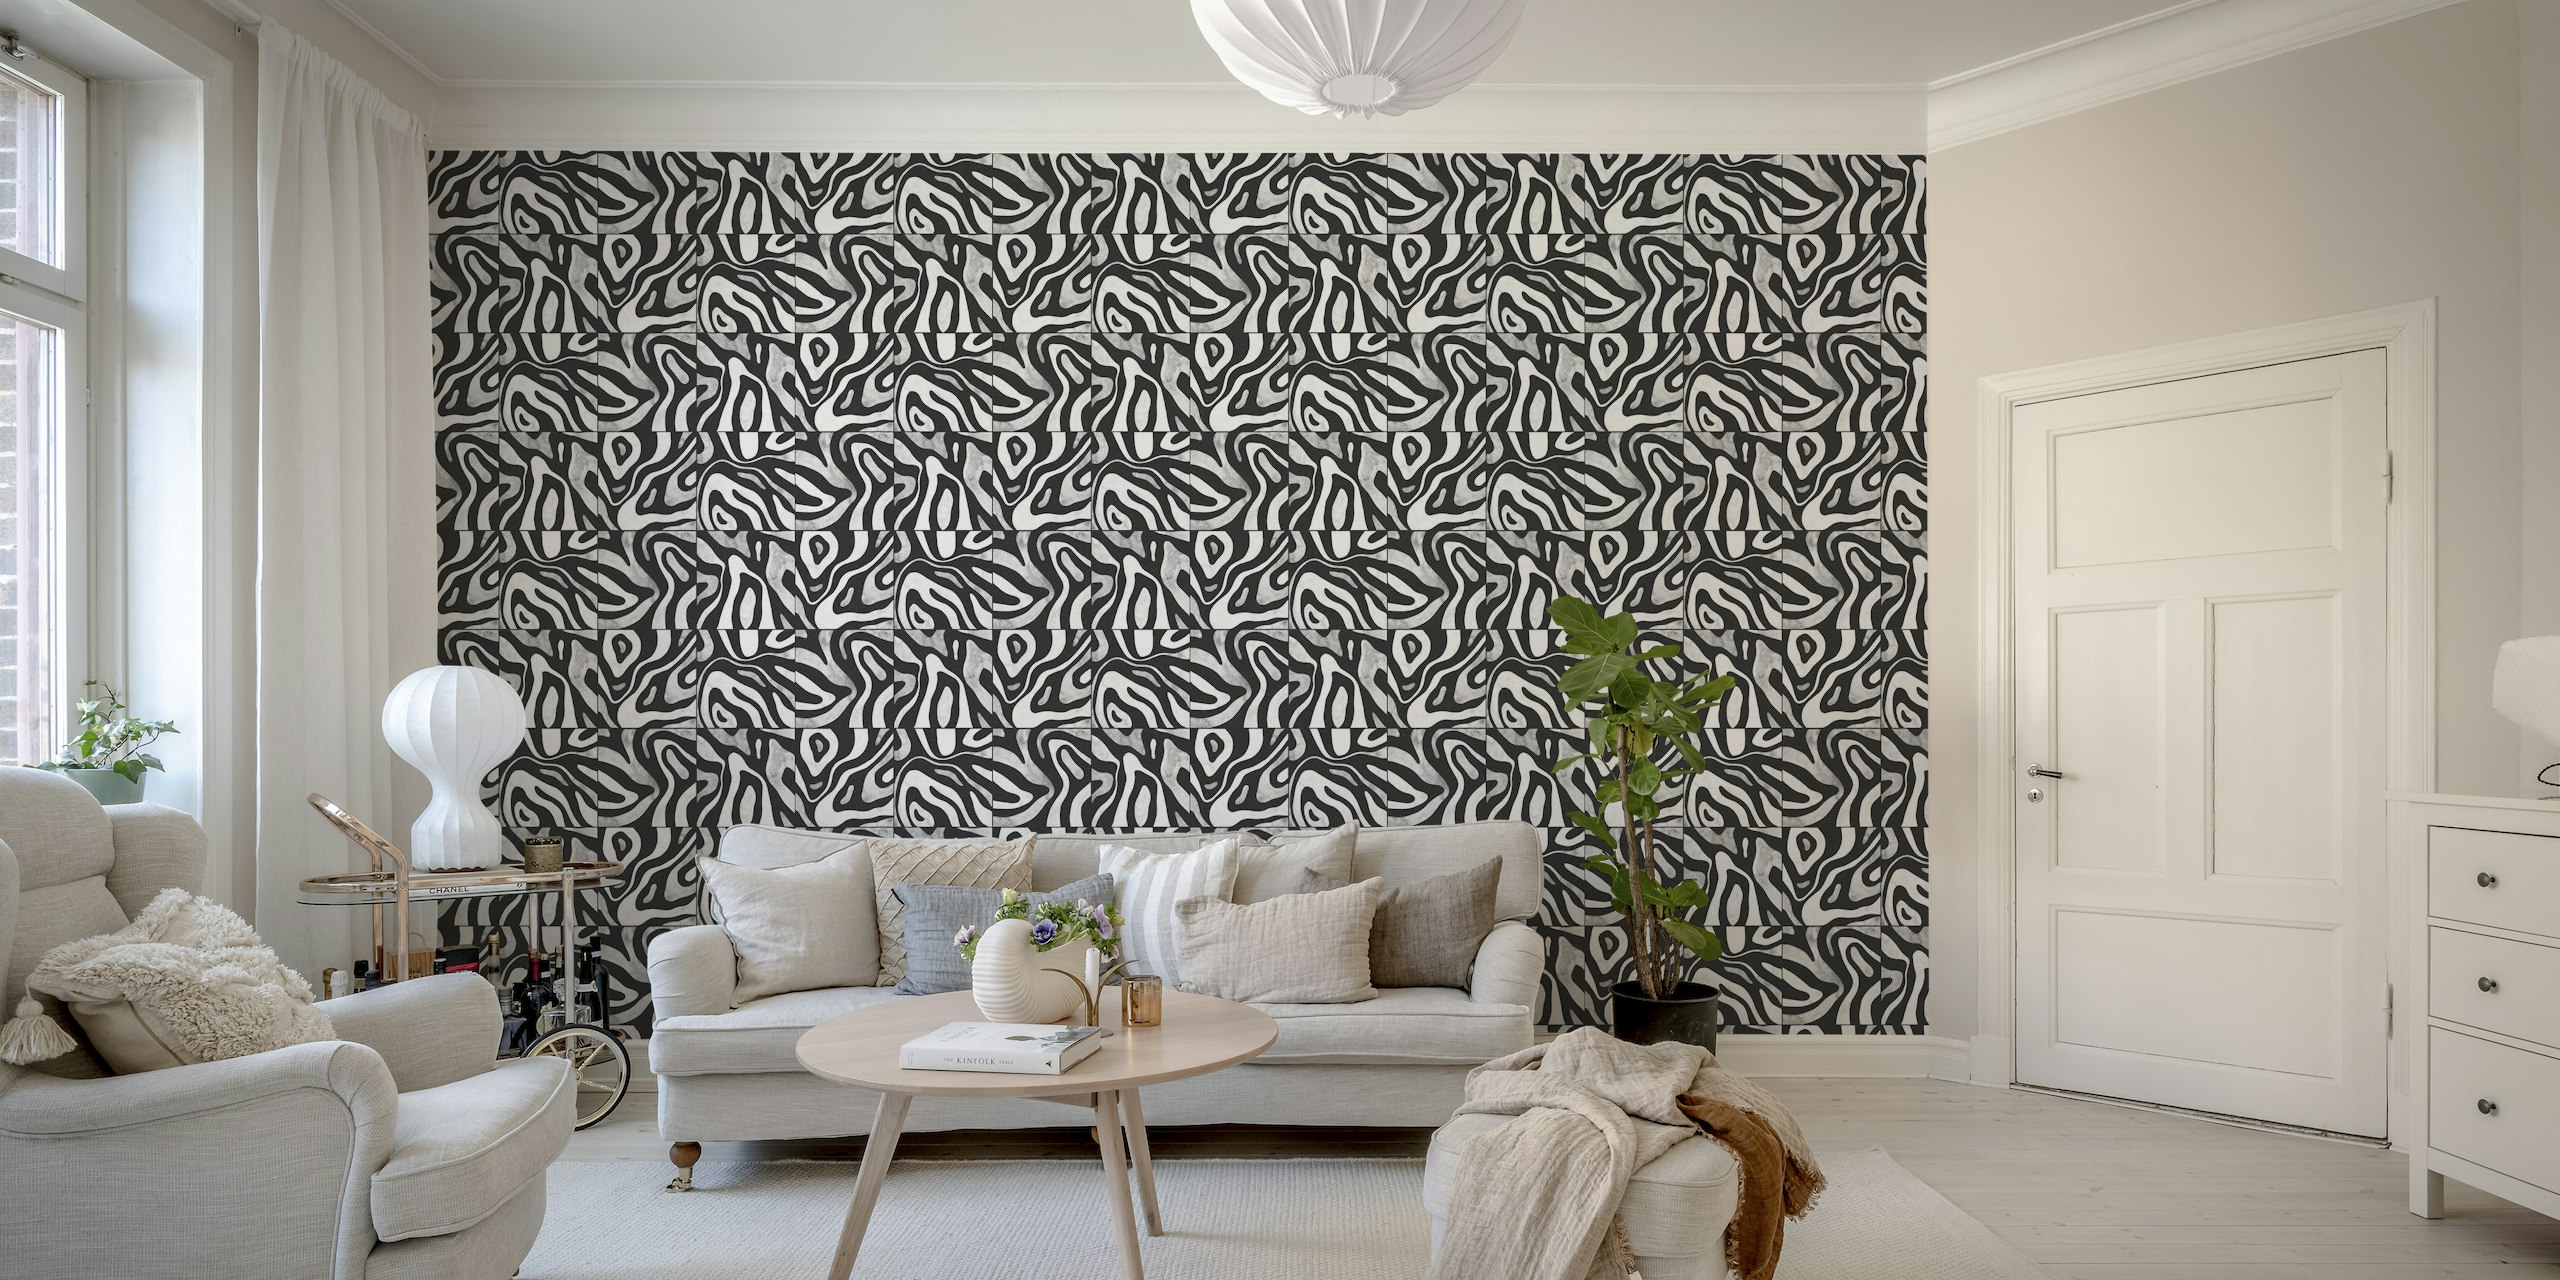 Abstrakt svart og hvitt veggmaleri med et mønster som ligner åser sett ovenfra